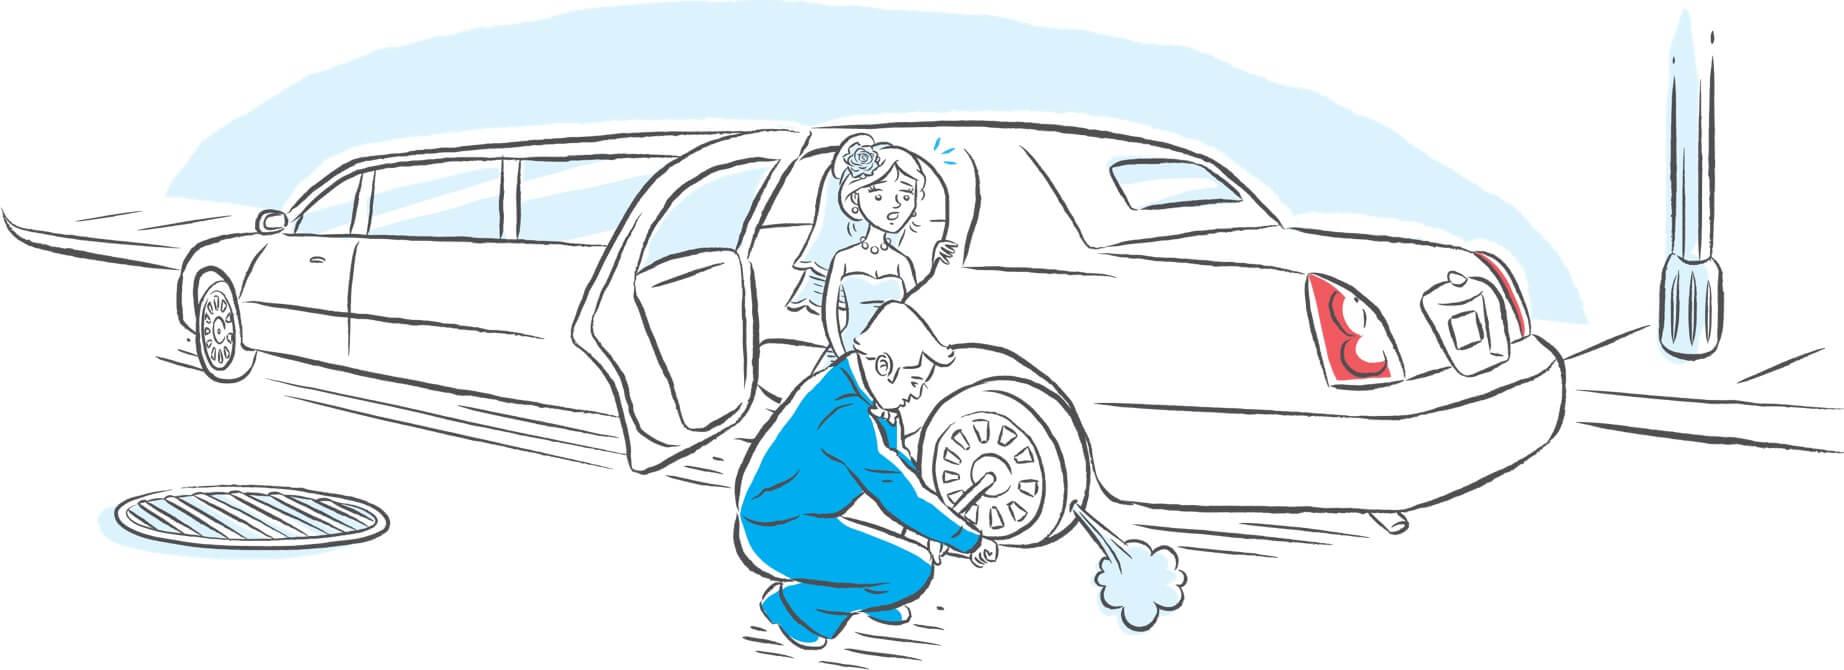 Desenho de um casal em uma limosine com o pneu furado, o noivo está trocando o peneu e a noiva está dentro do carro preocupada.